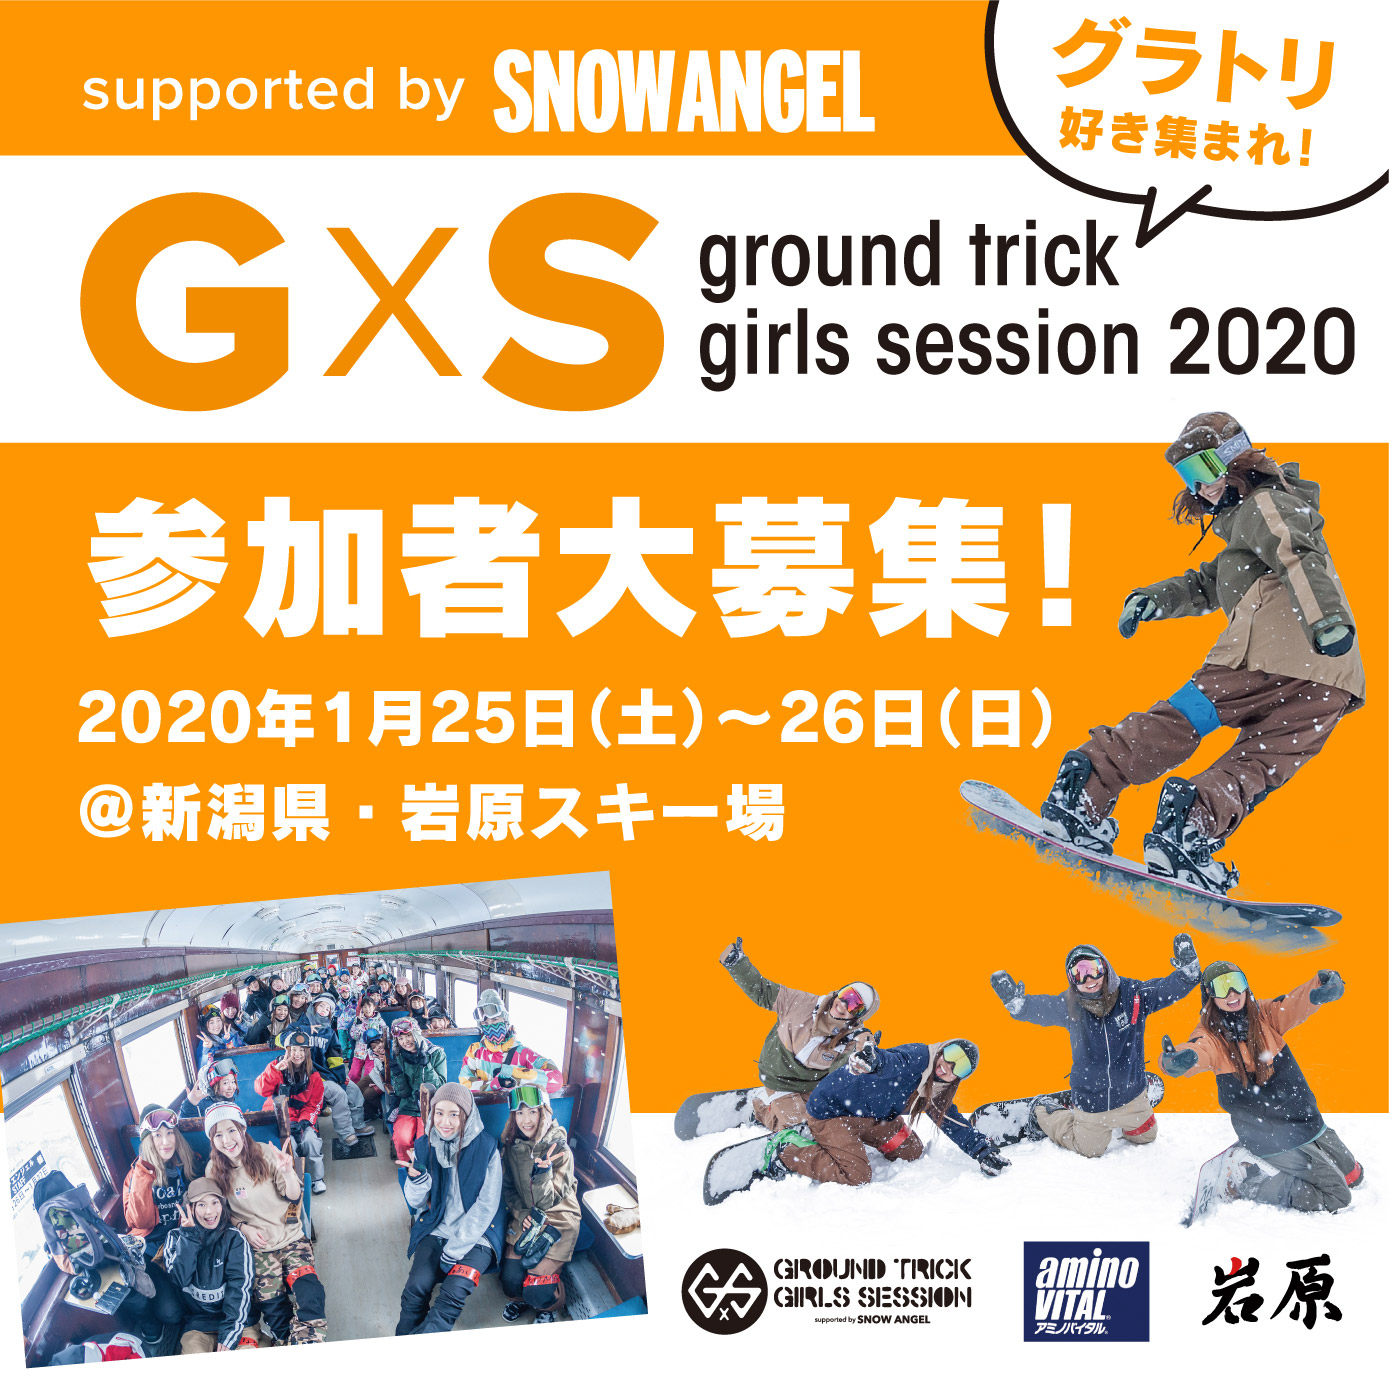 グラトリ好き集まれ！『G×S ground trick girls session 2020 supported by SNOW ANGEL』参加者大募集!!